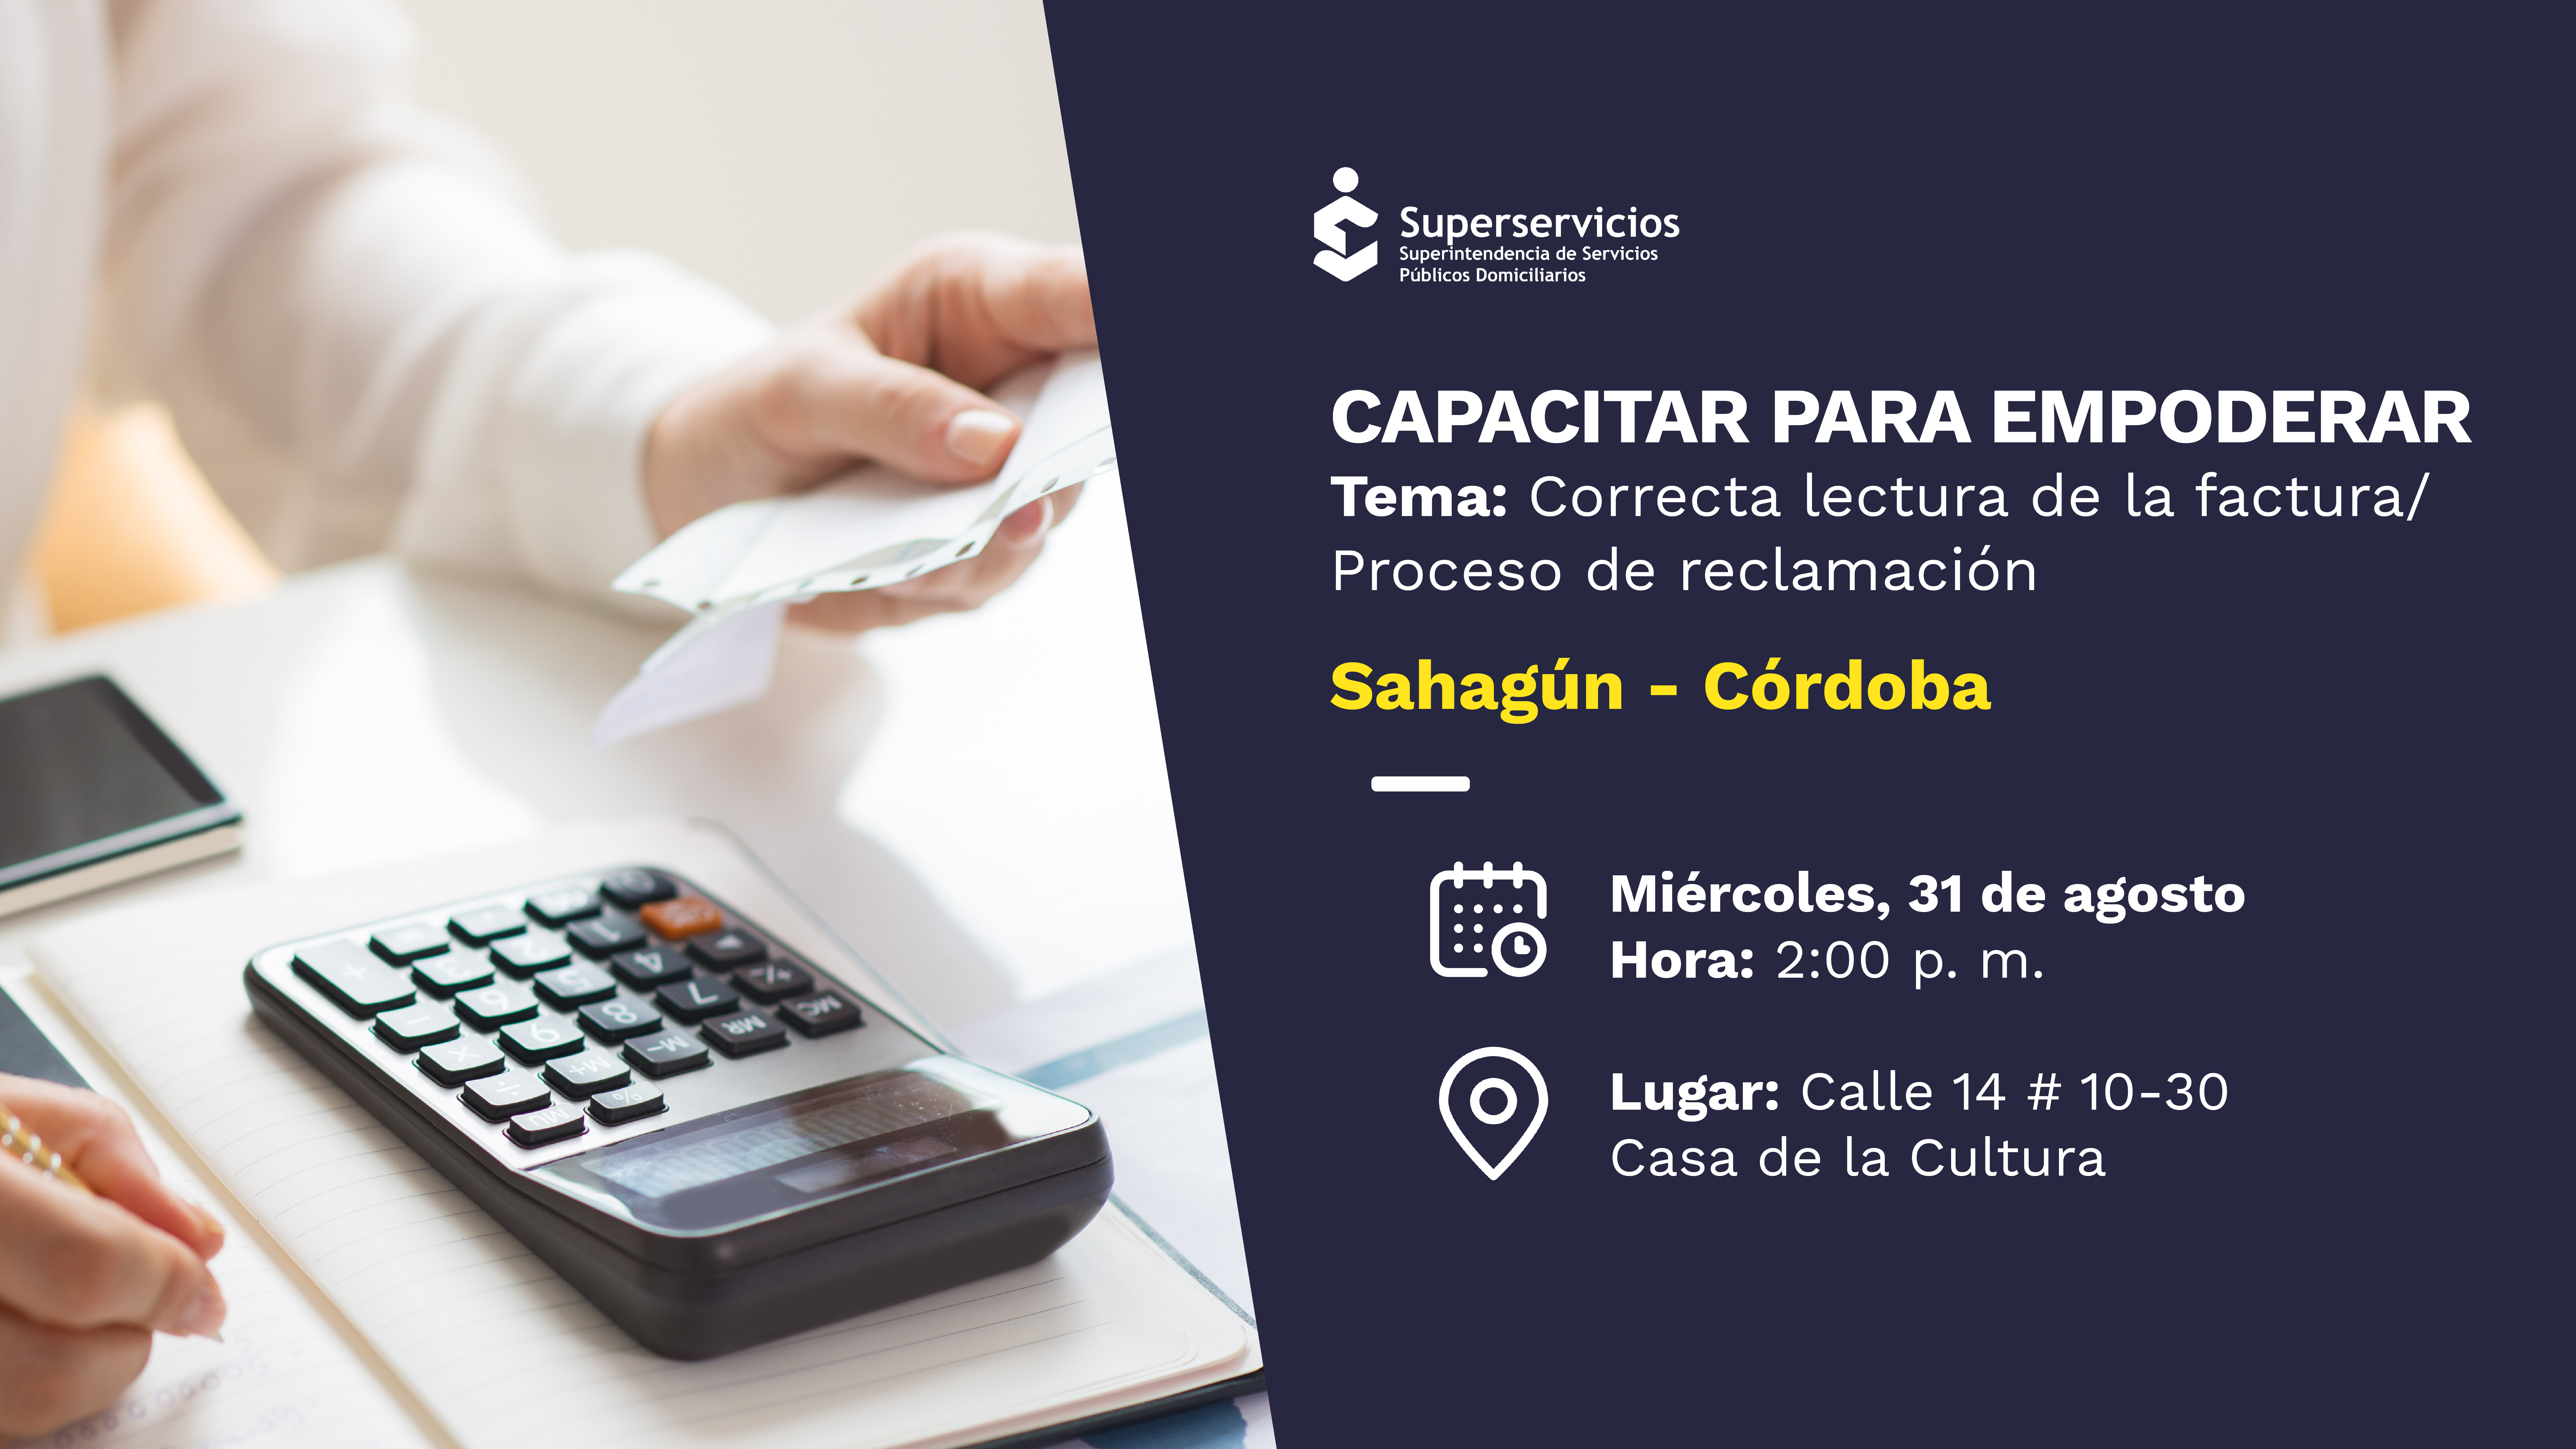 Capacitar para Empoderar - Correcta lectura de la factura y proceso de reclamación en Sahagún, Córdoba
